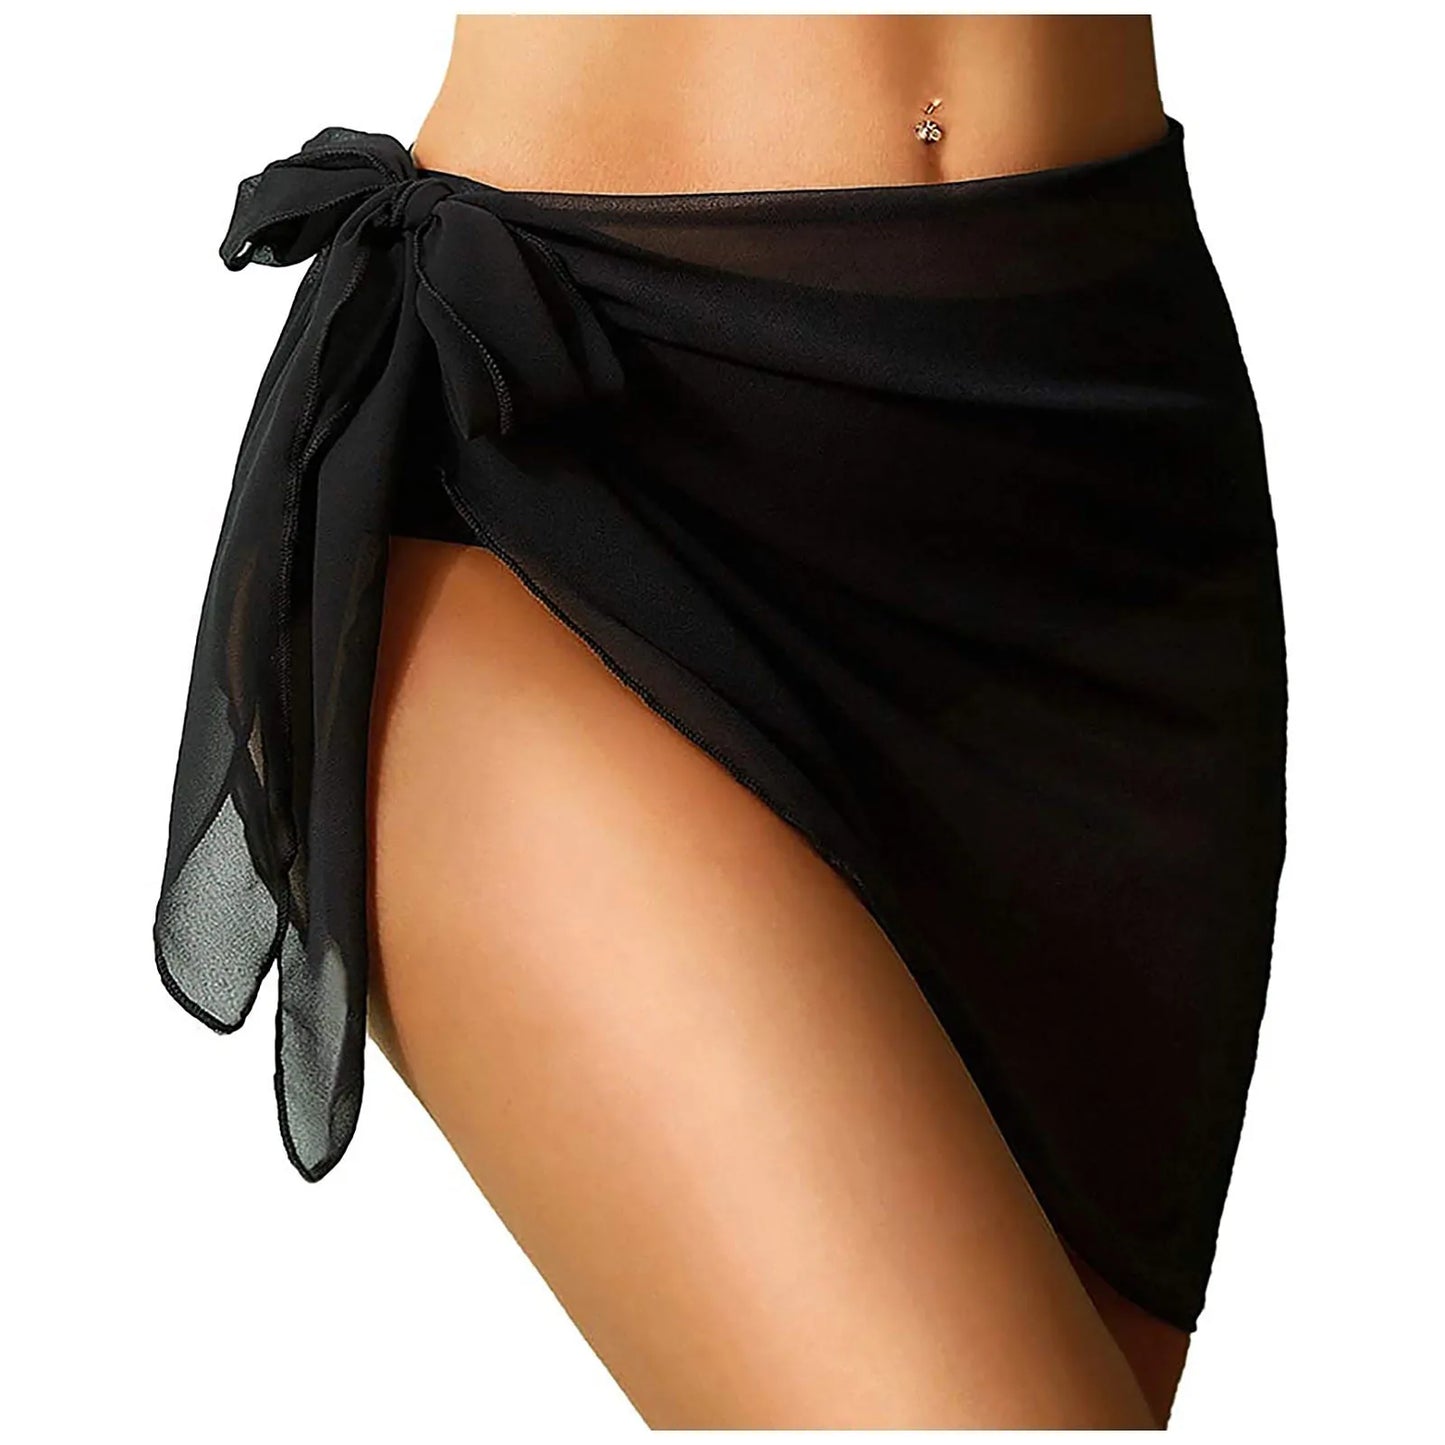 Short Sarongs Sheer Chiffon Scarf Wrap Cover Ups Women Beach Wear Bikini Sets